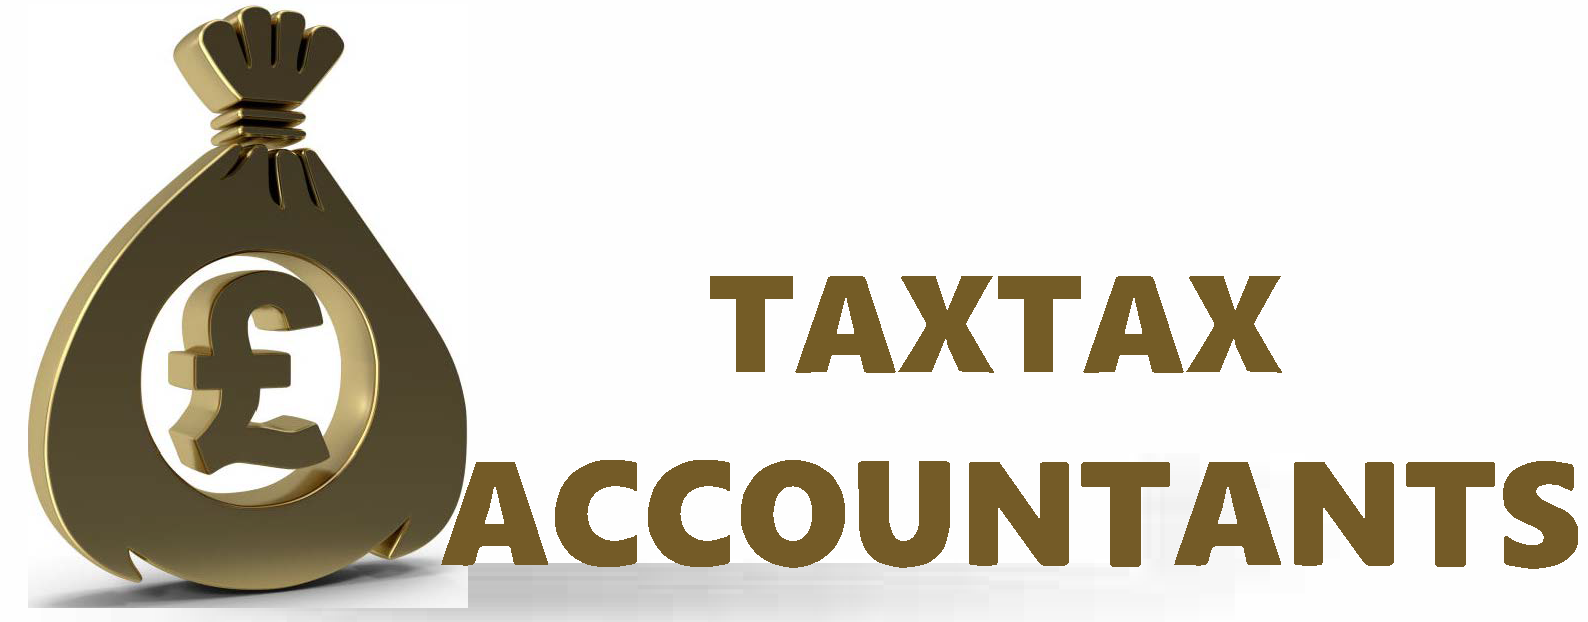 taxtax.accountants